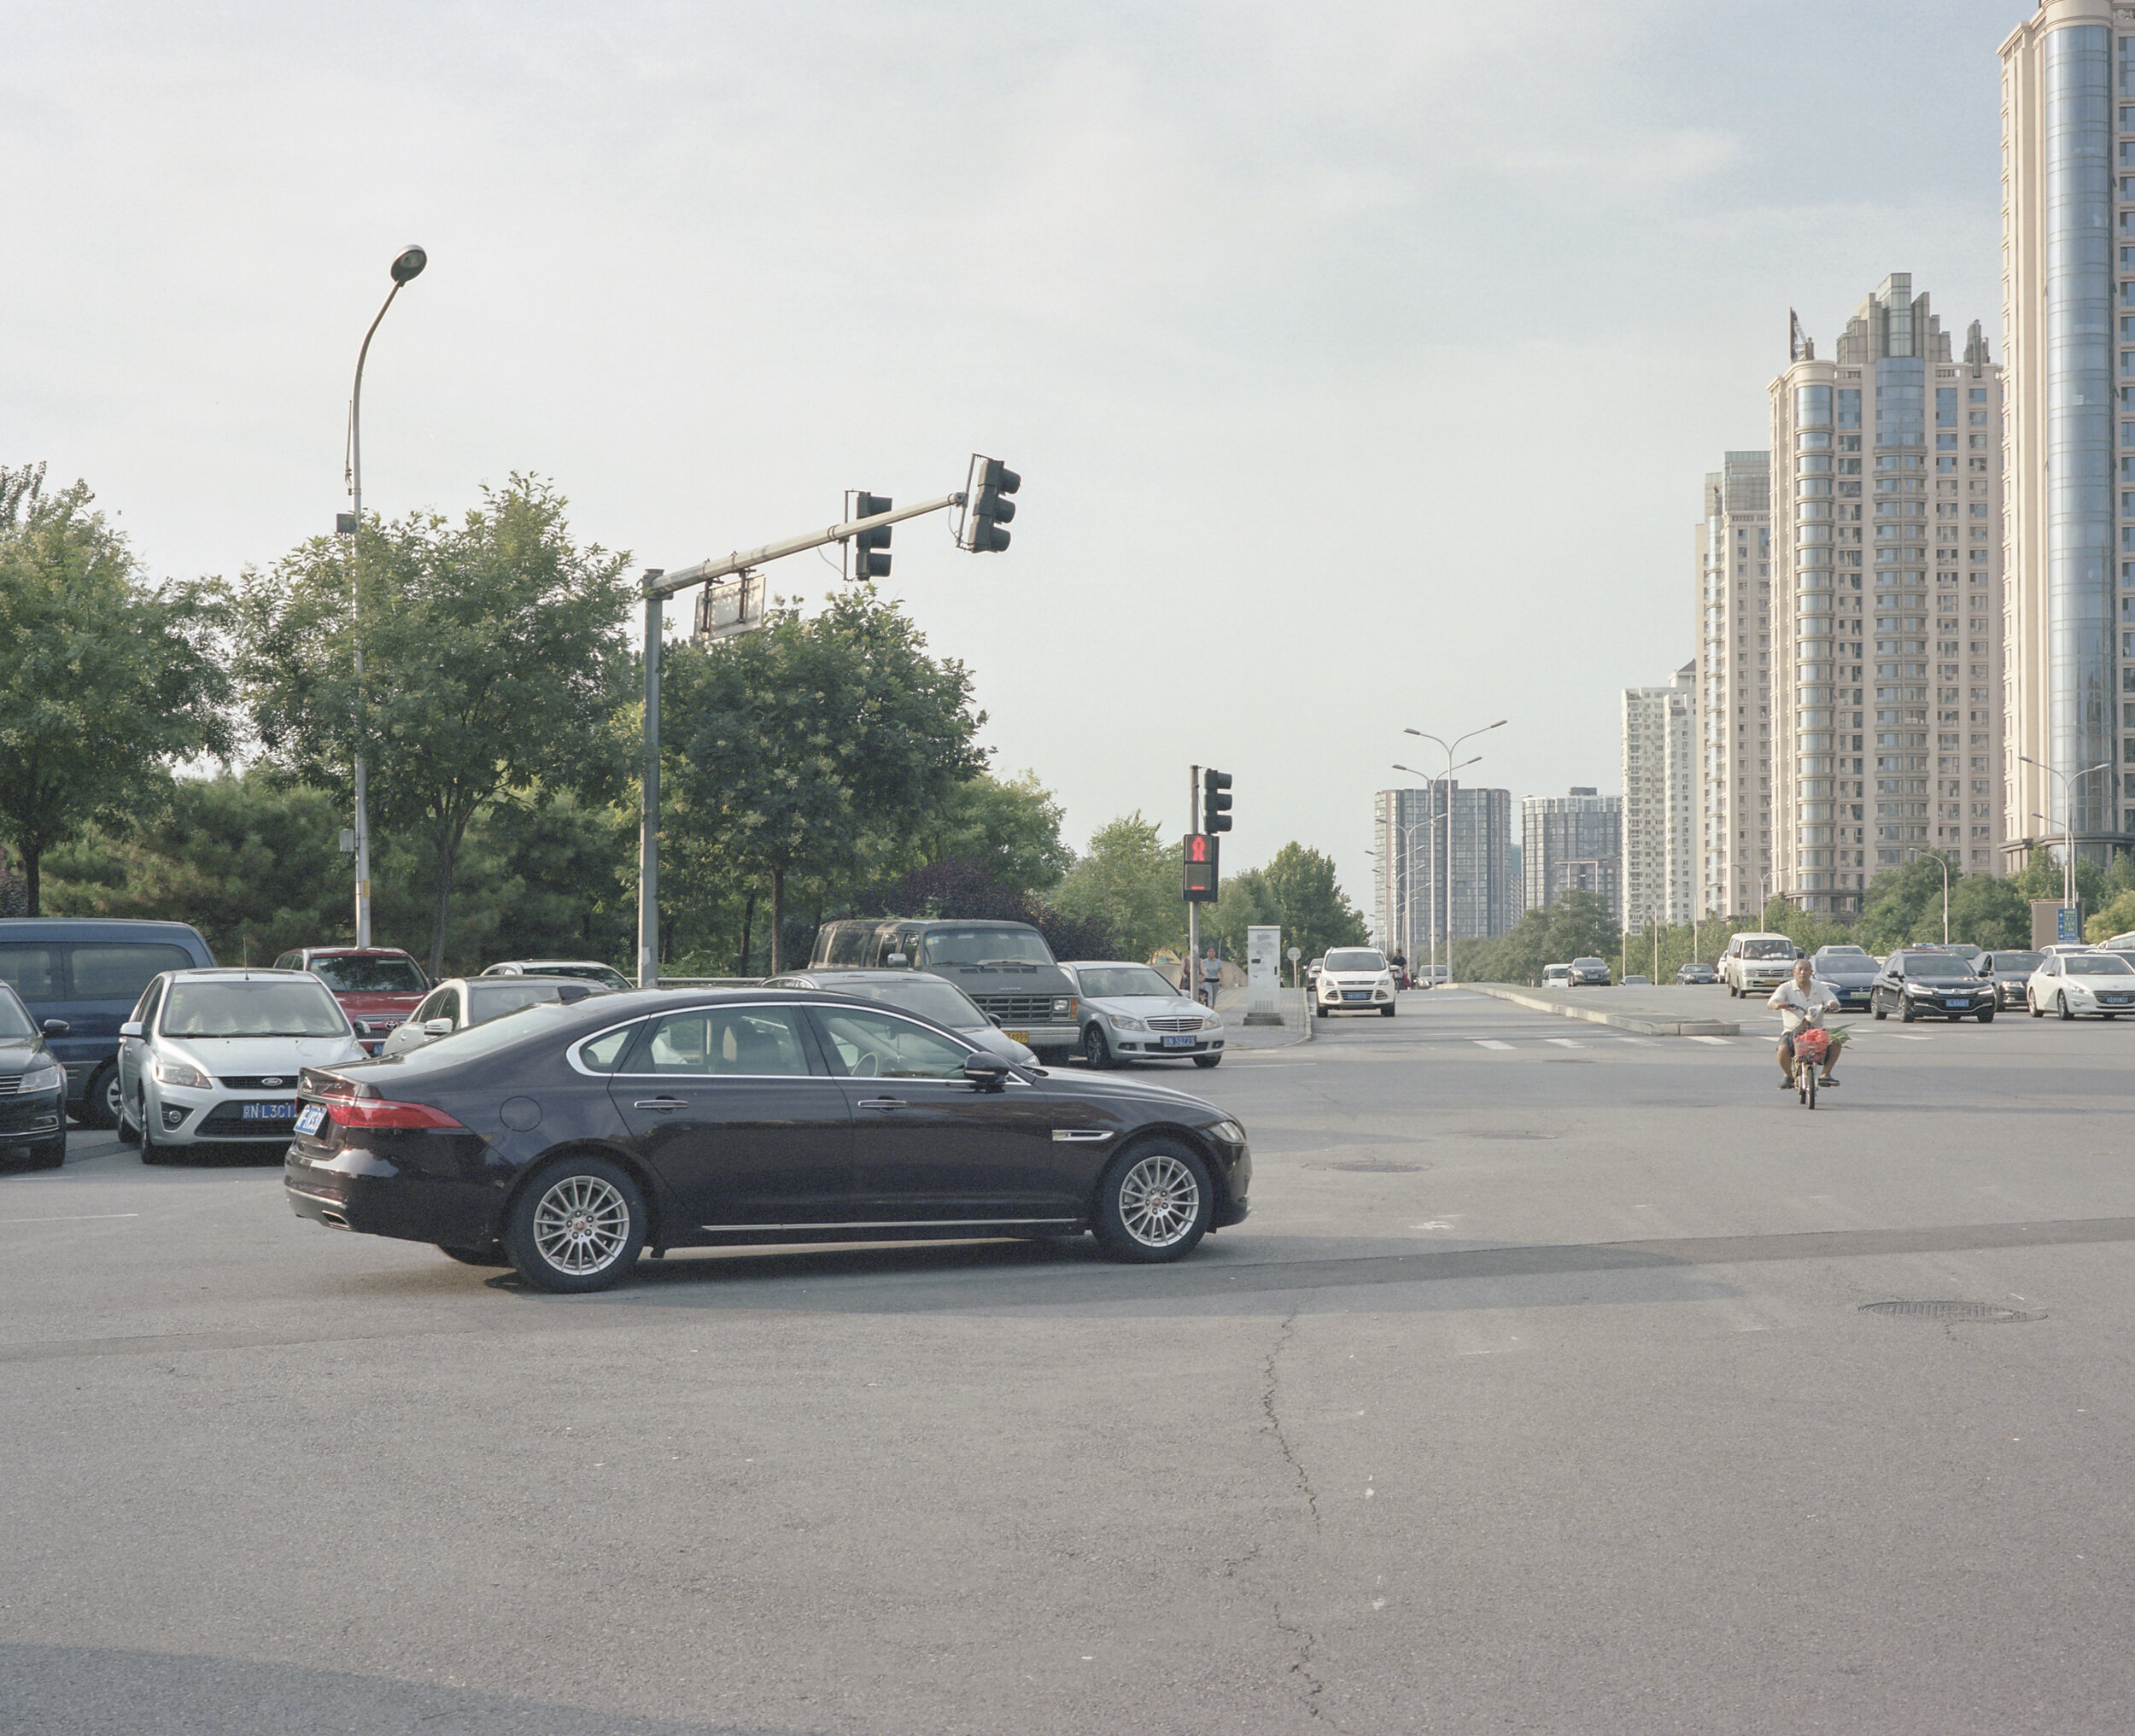  Wangjing West Road, Beijing, August 2018 